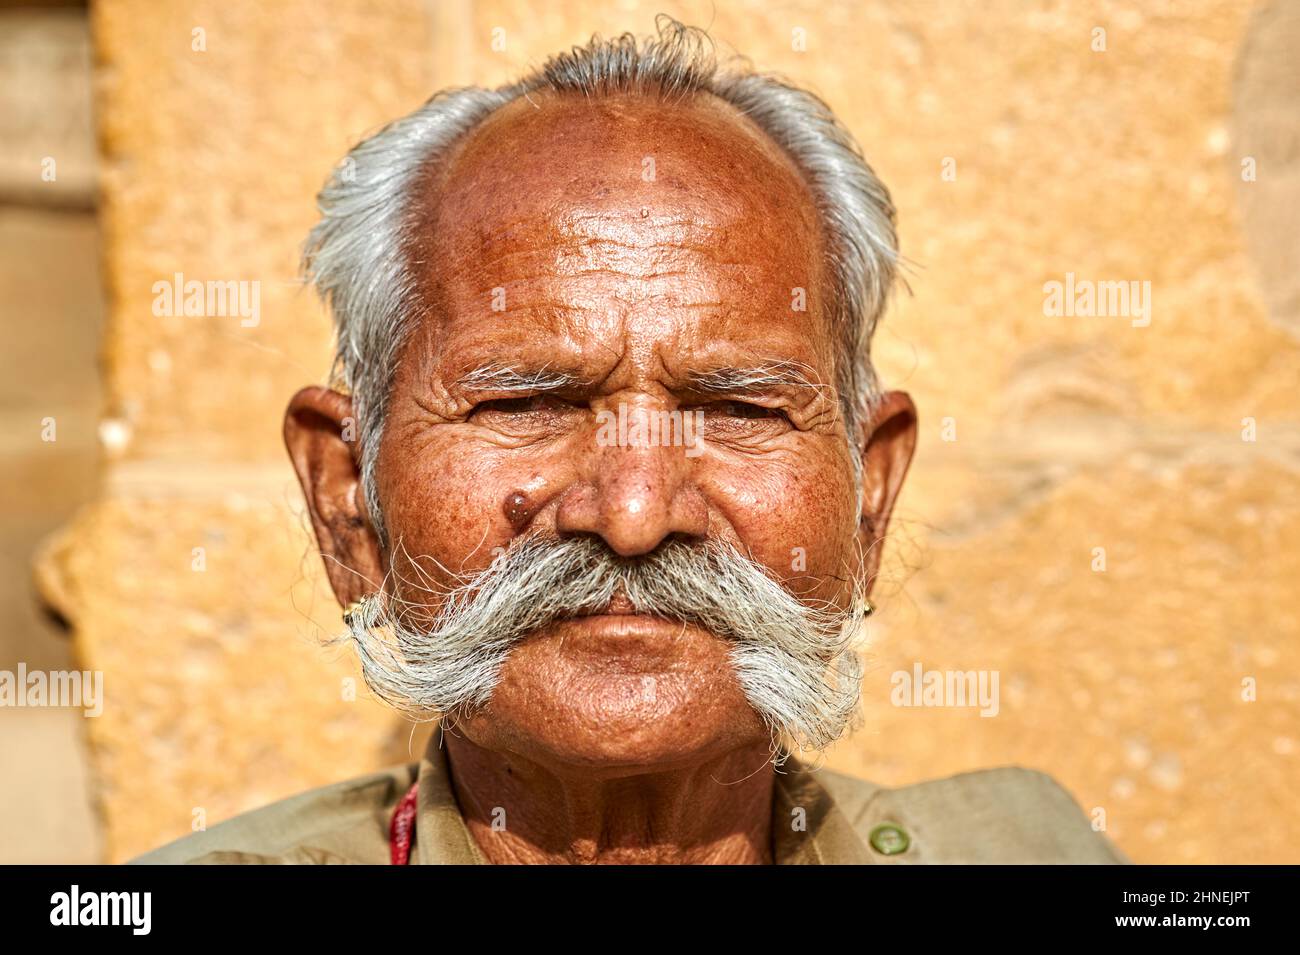 Inde Rajasthan jaisalmer. Portrait d'un homme avec une longue moustache Banque D'Images